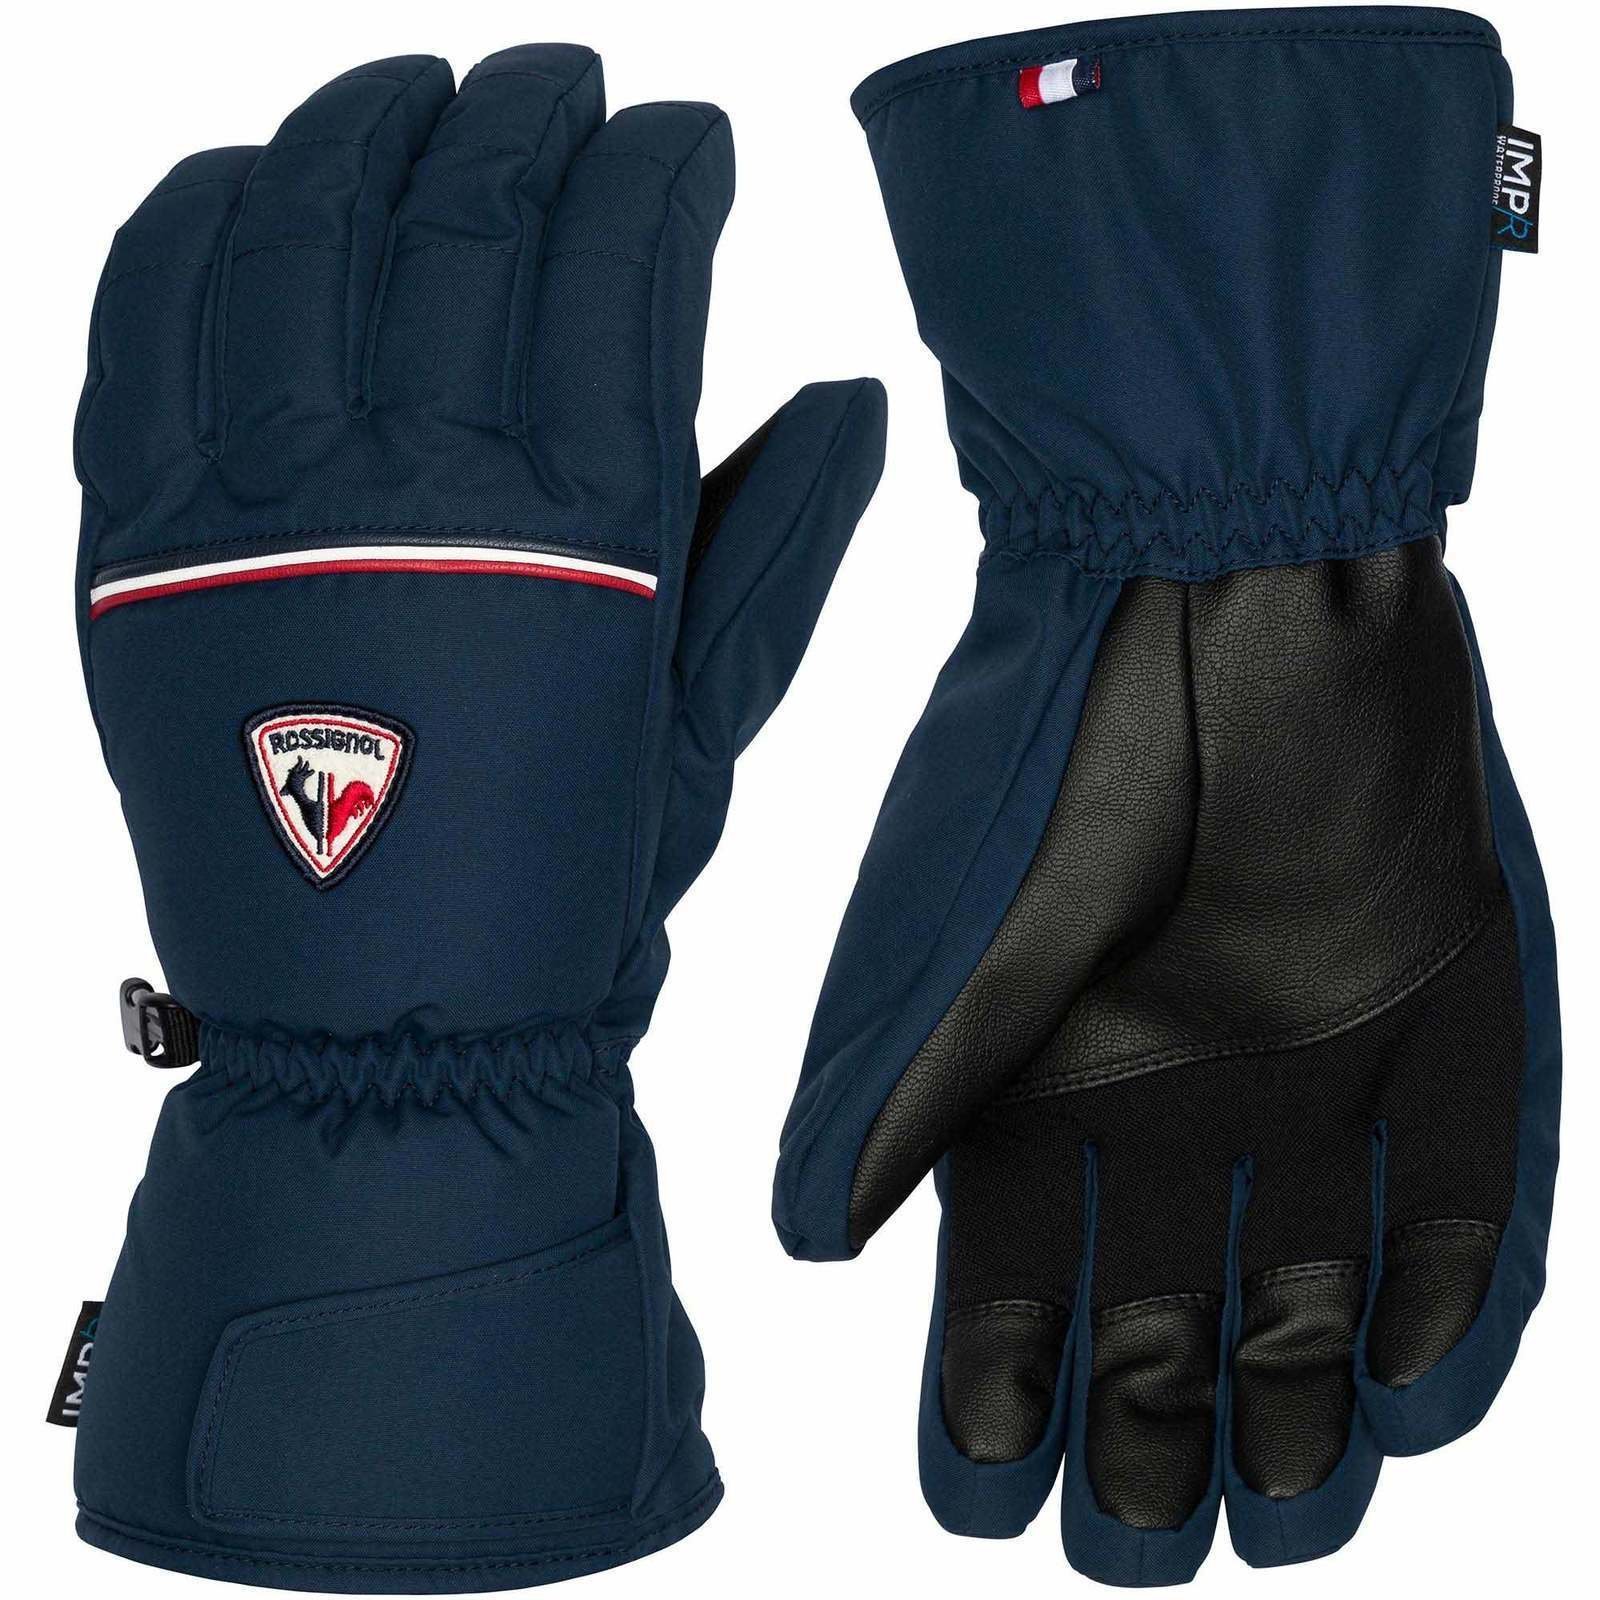 Skijaške rukavice Rossignol Mens Legend IMPR Gloves Dark Navy M Skijaške rukavice